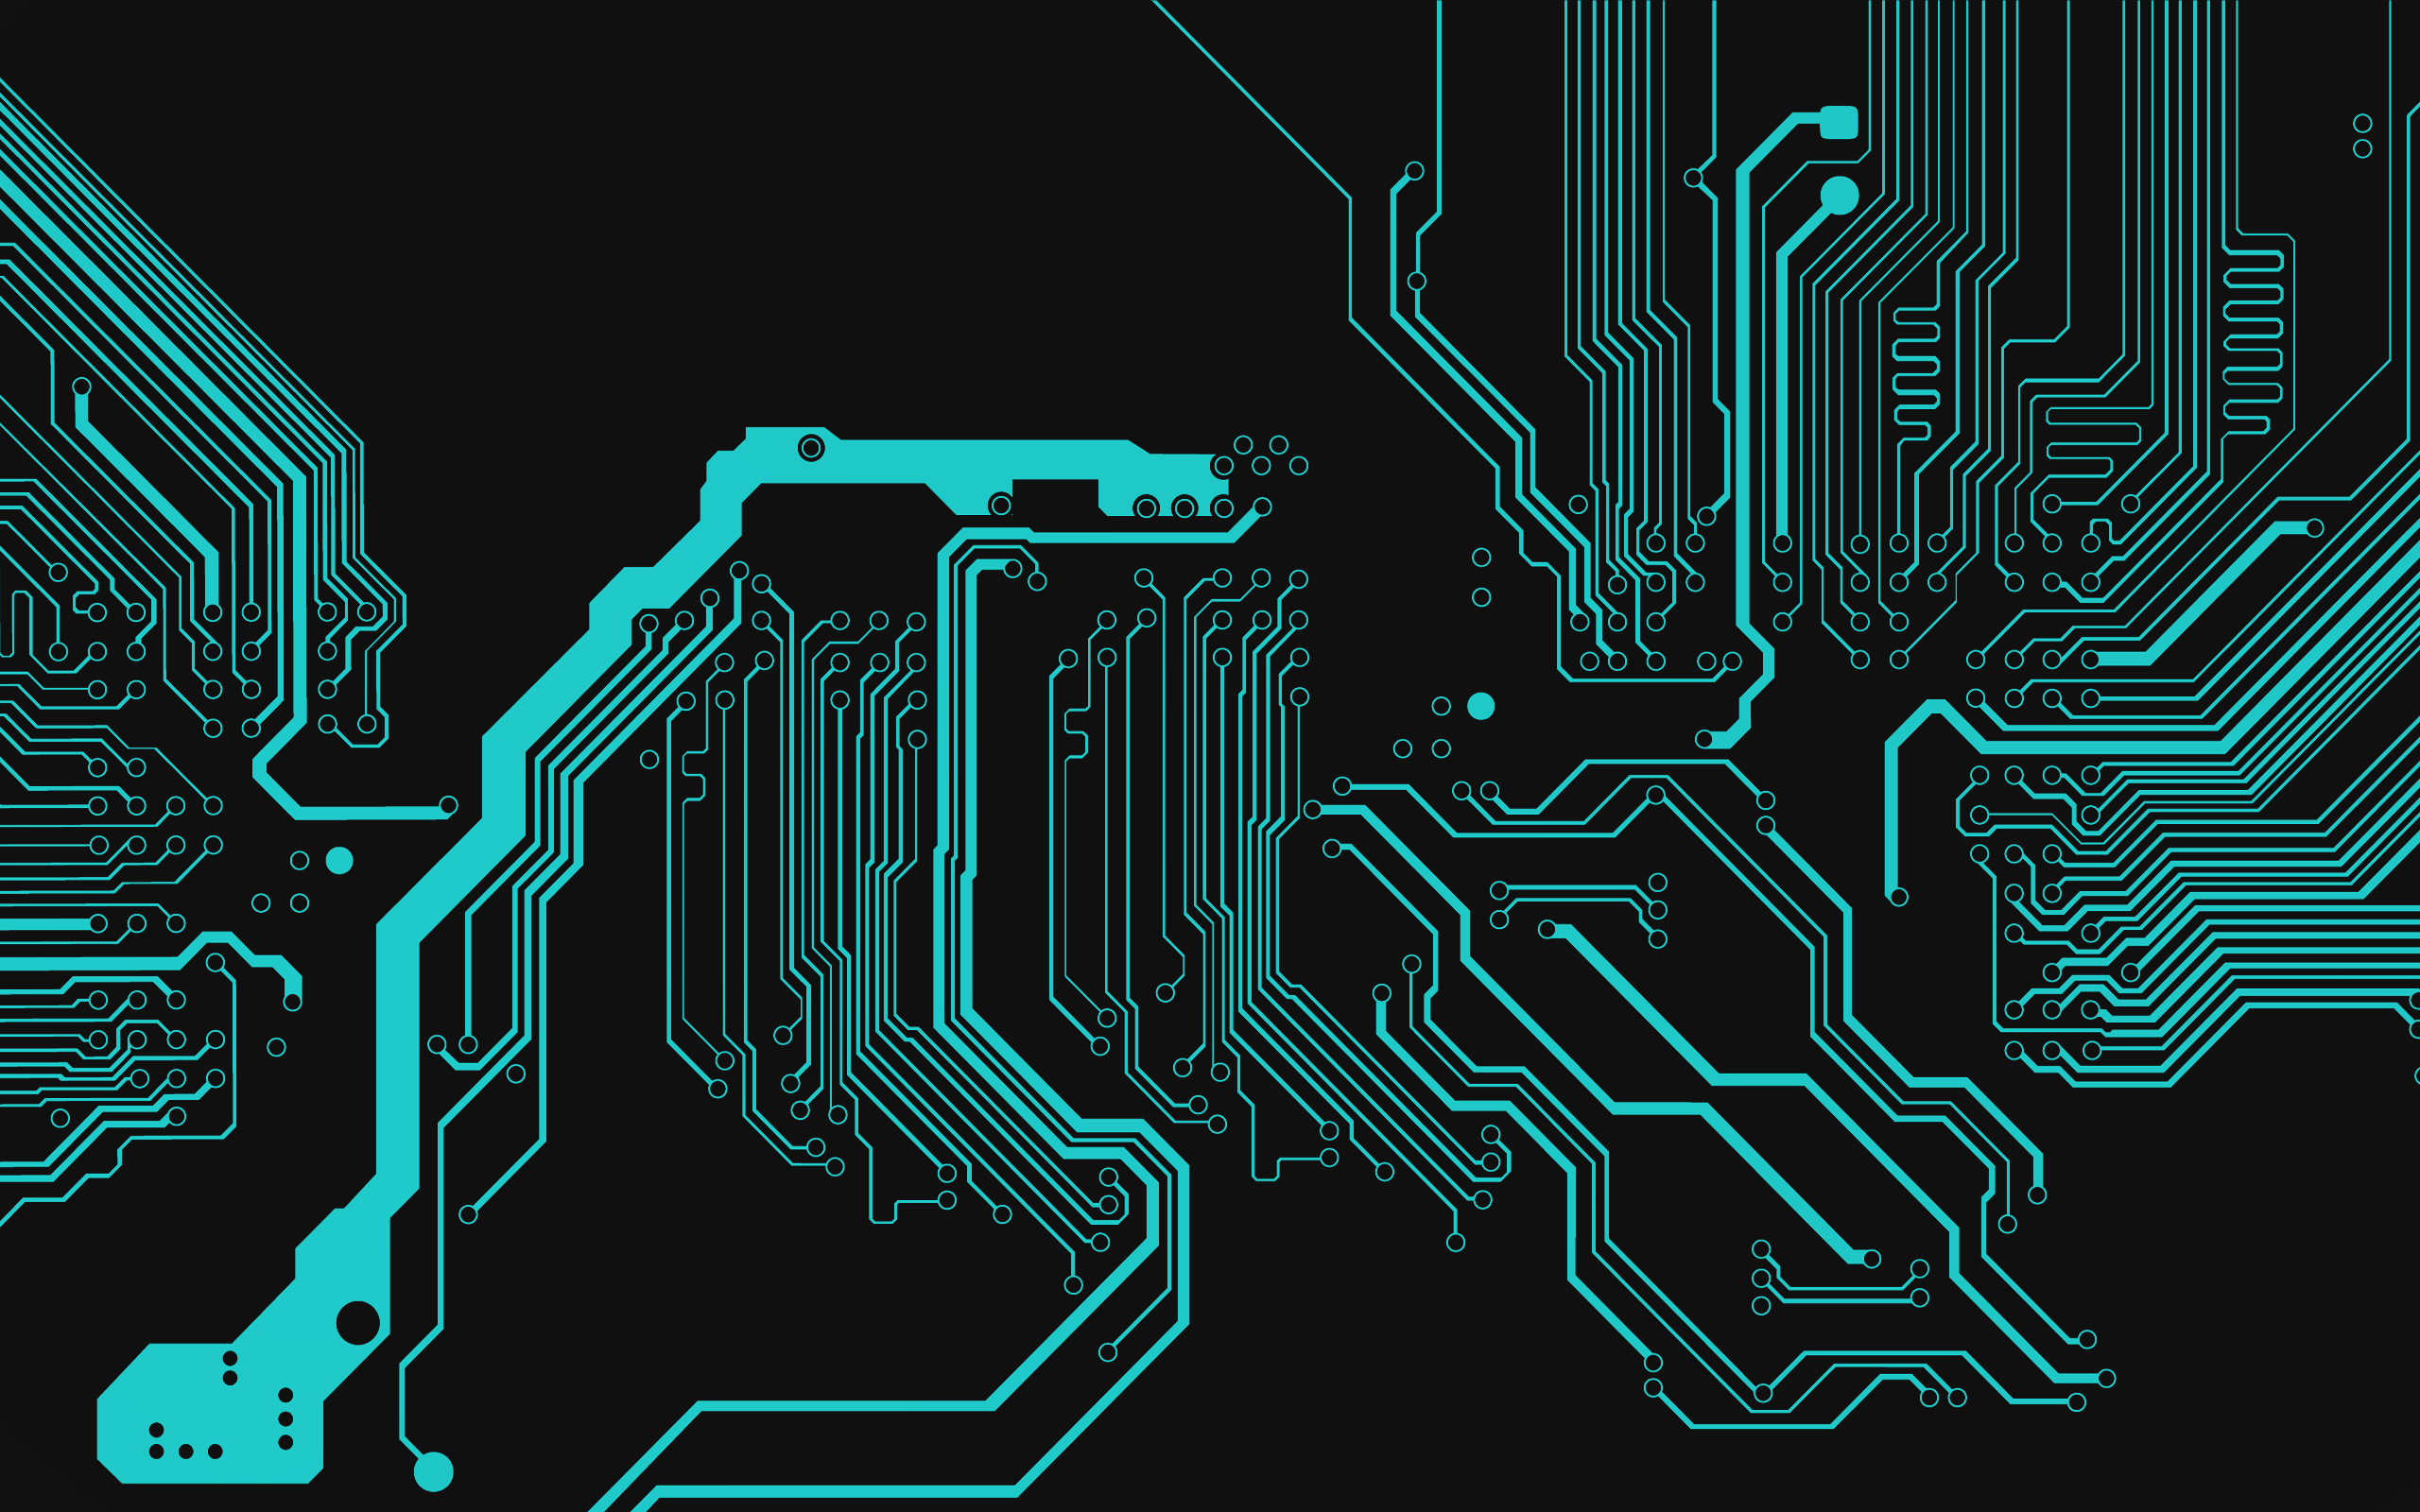 Circuit Computer Wallpapers Desktop Backgrounds 2560x1600 ID 2560x1600